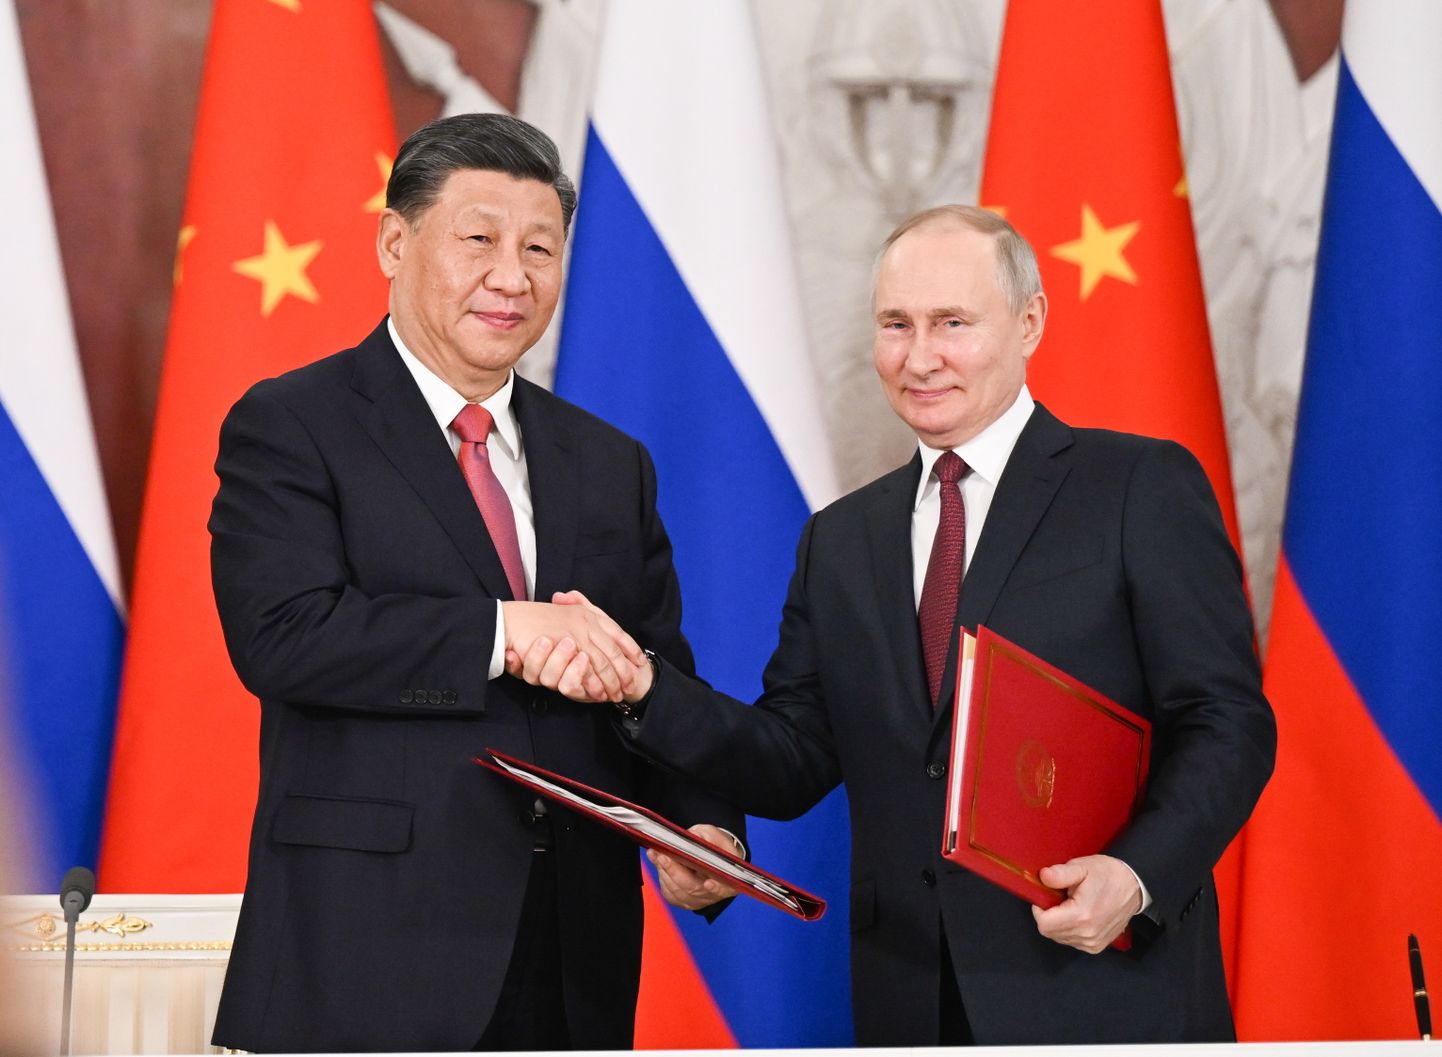 Xi Jinpingi kohtumine Vladimir Putiniga Kremlis 21. märtsil 2023. Pilt on illustreeriv.